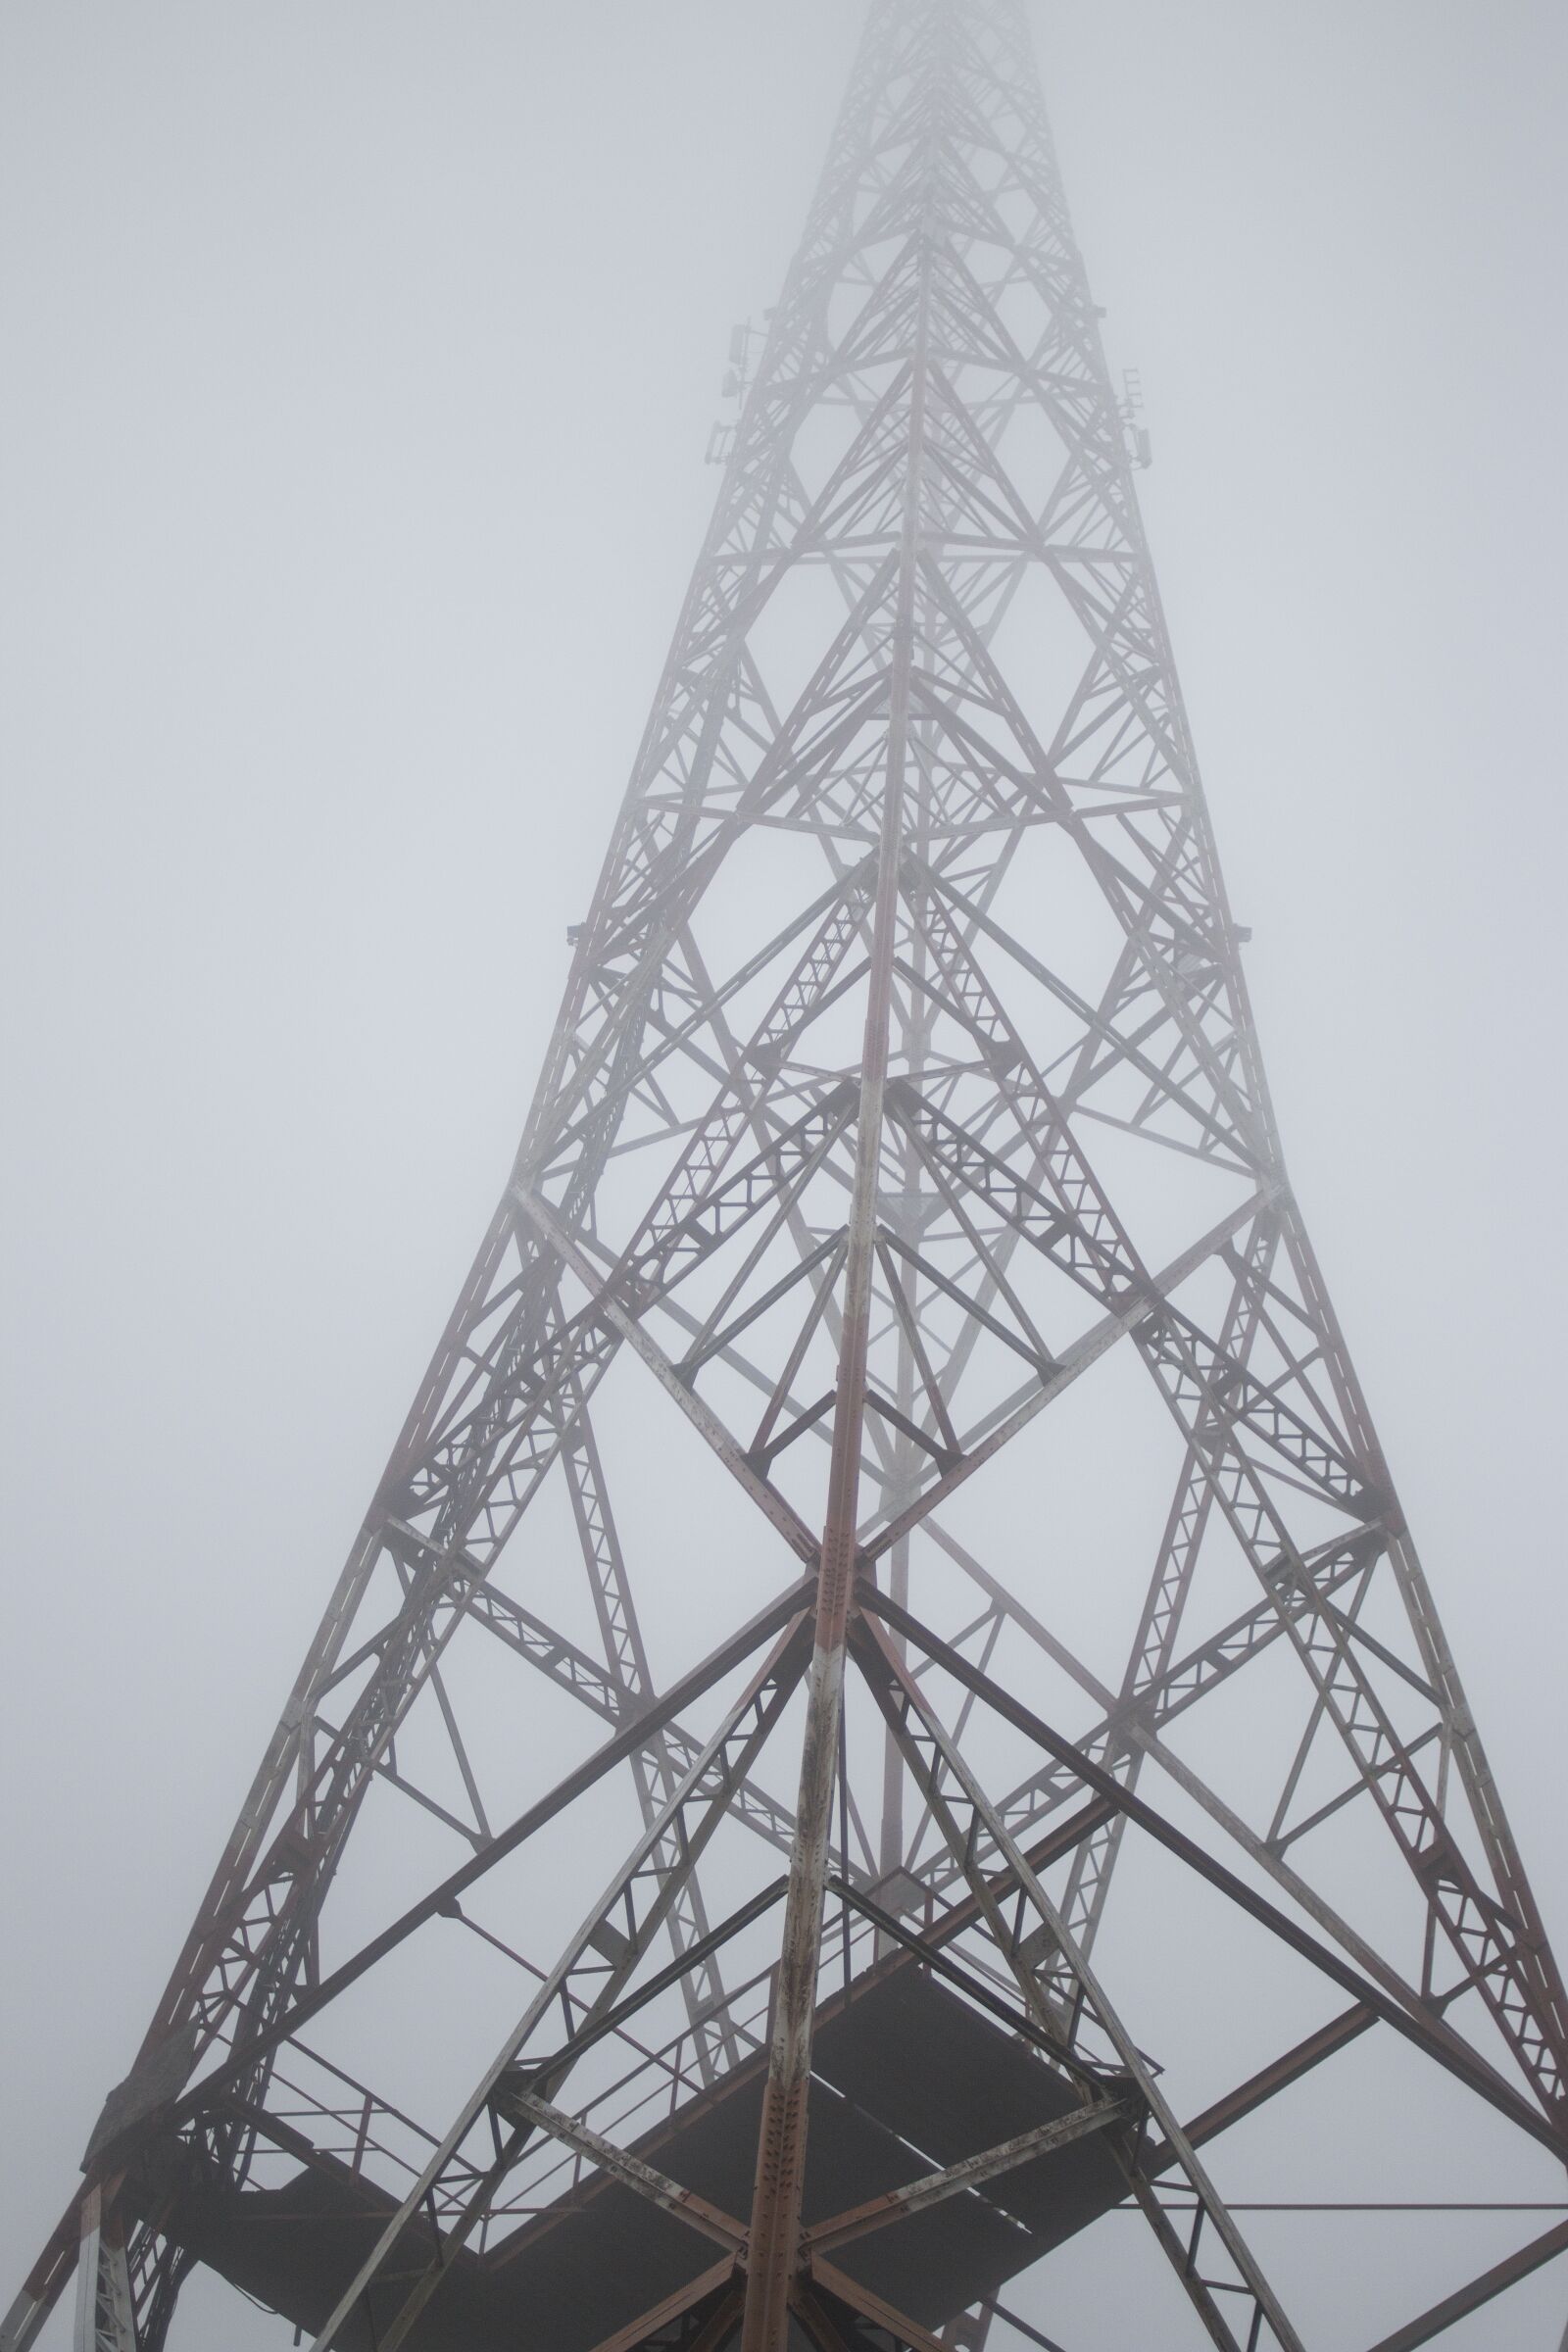 Canon EOS 70D sample photo. Mist, fog, tower photography